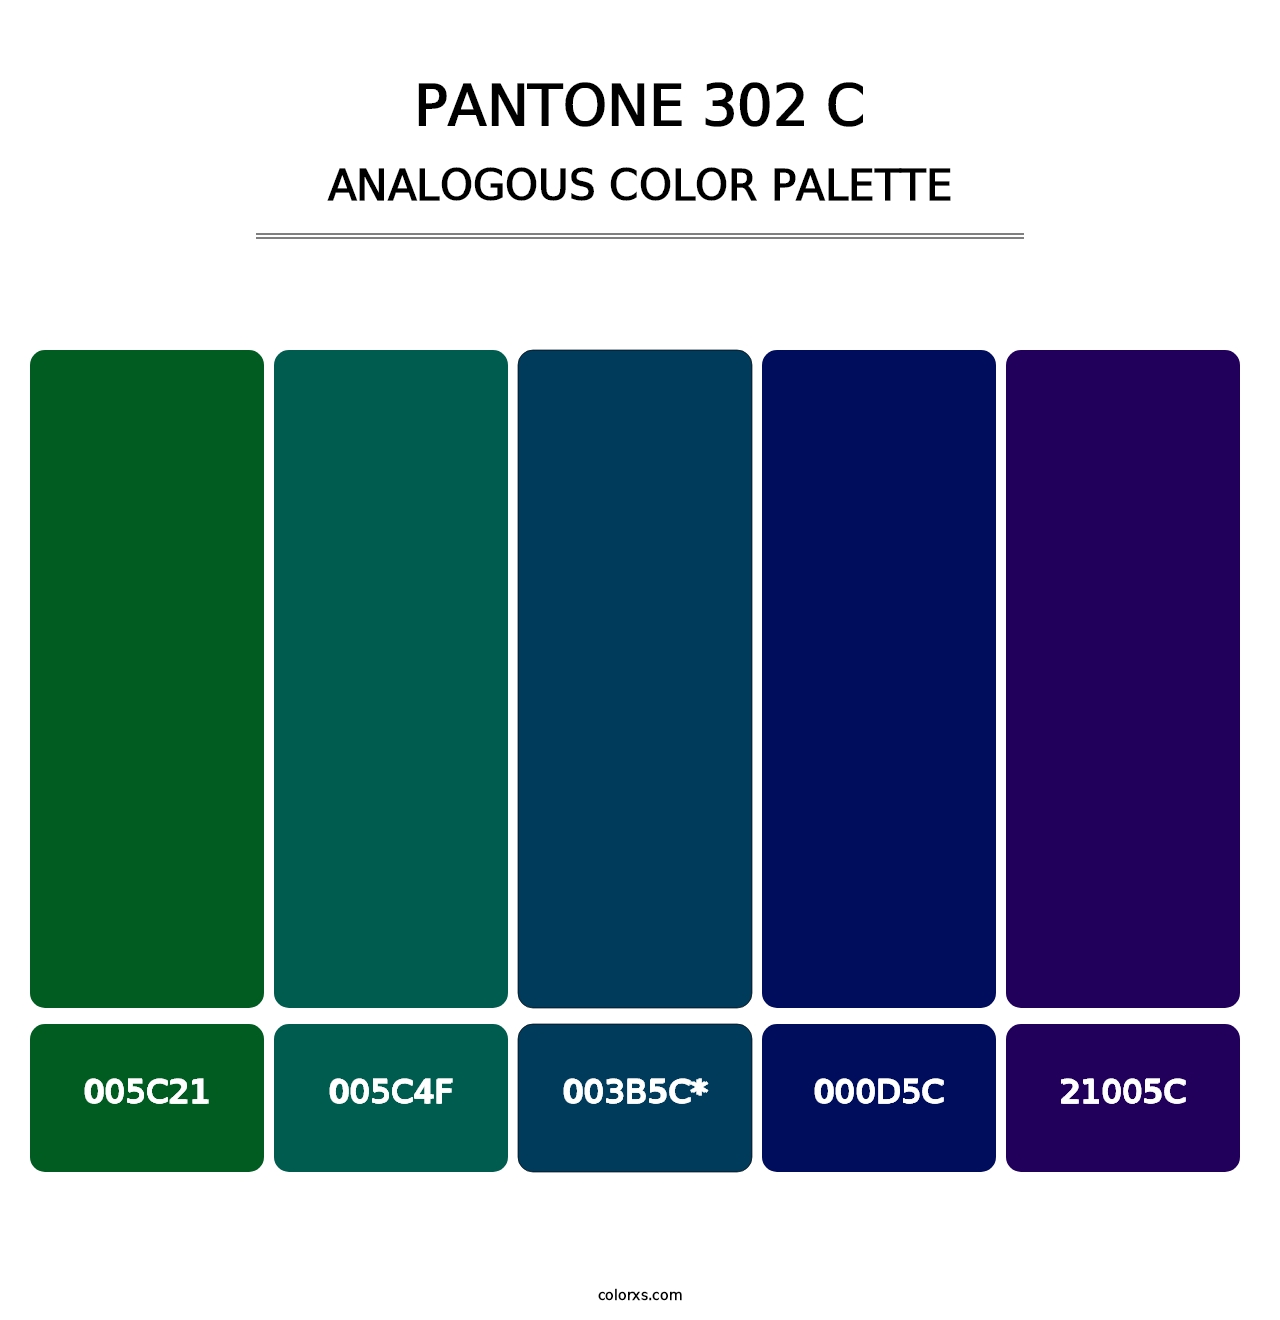 PANTONE 302 C - Analogous Color Palette